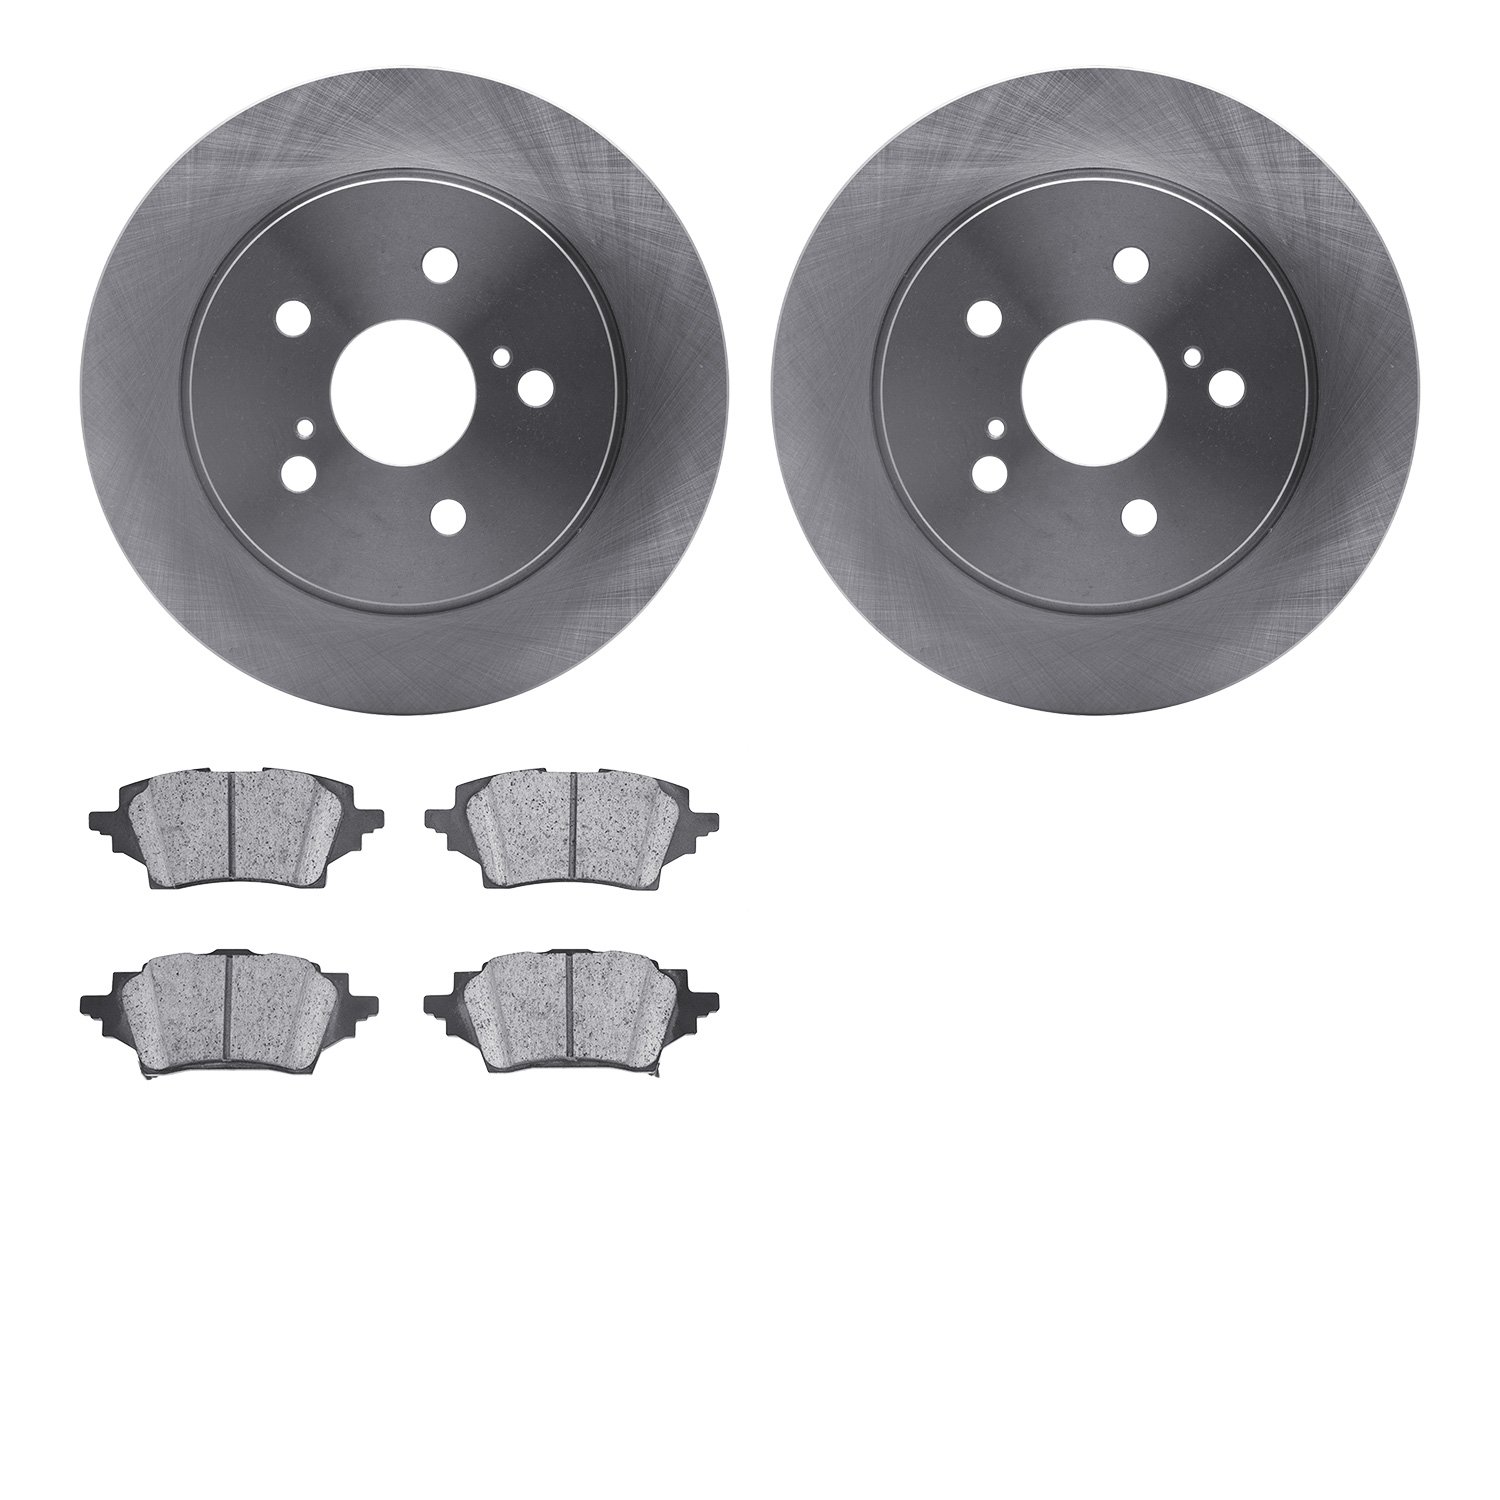 6502-76698 Brake Rotors w/5000 Advanced Brake Pads Kit, Fits Select Lexus/Toyota/Scion, Position: Rear